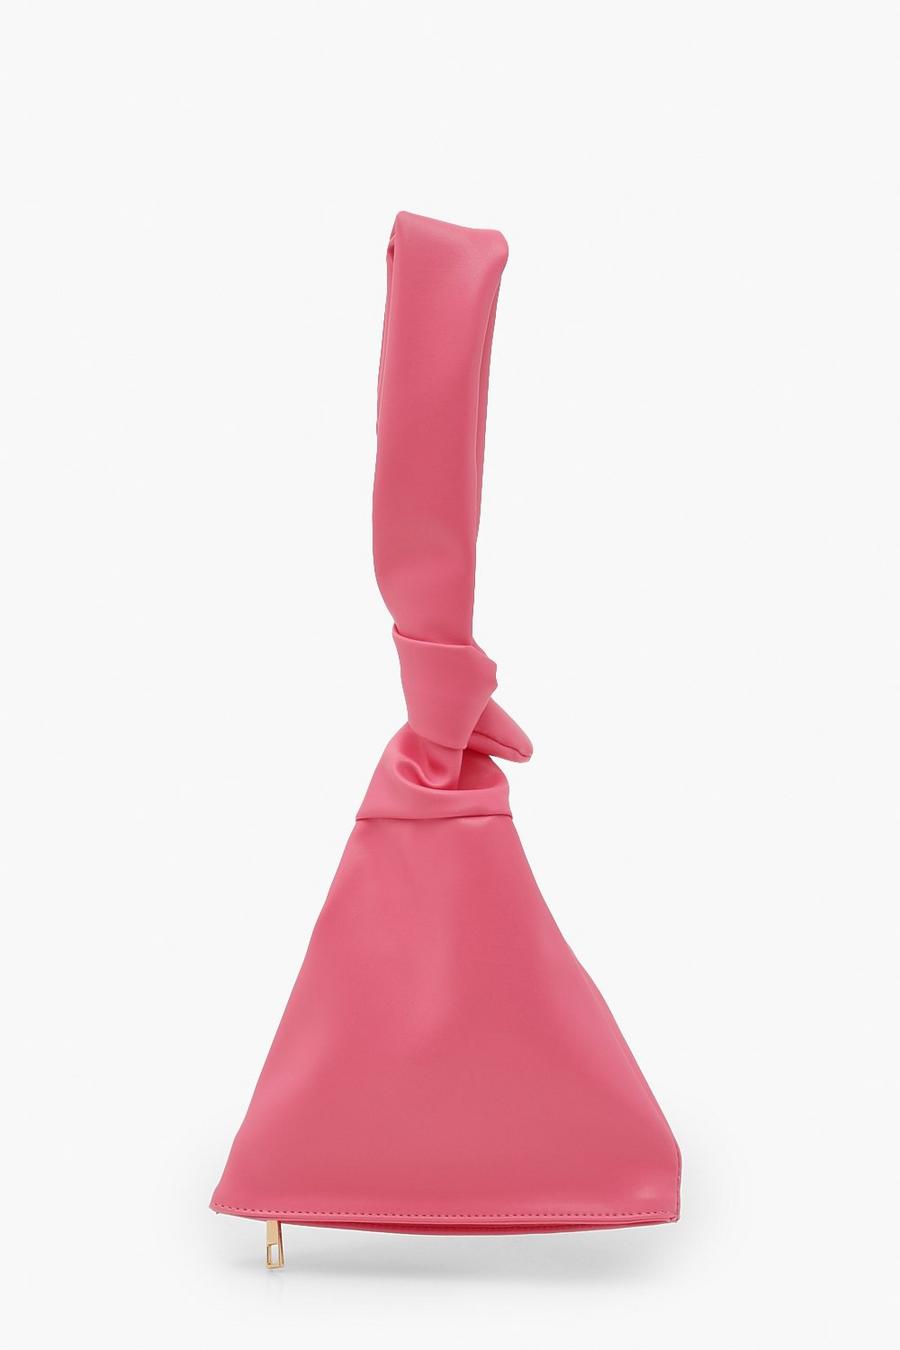 Lässige Triangel-Tasche mit Knotengriff , Helles rosa